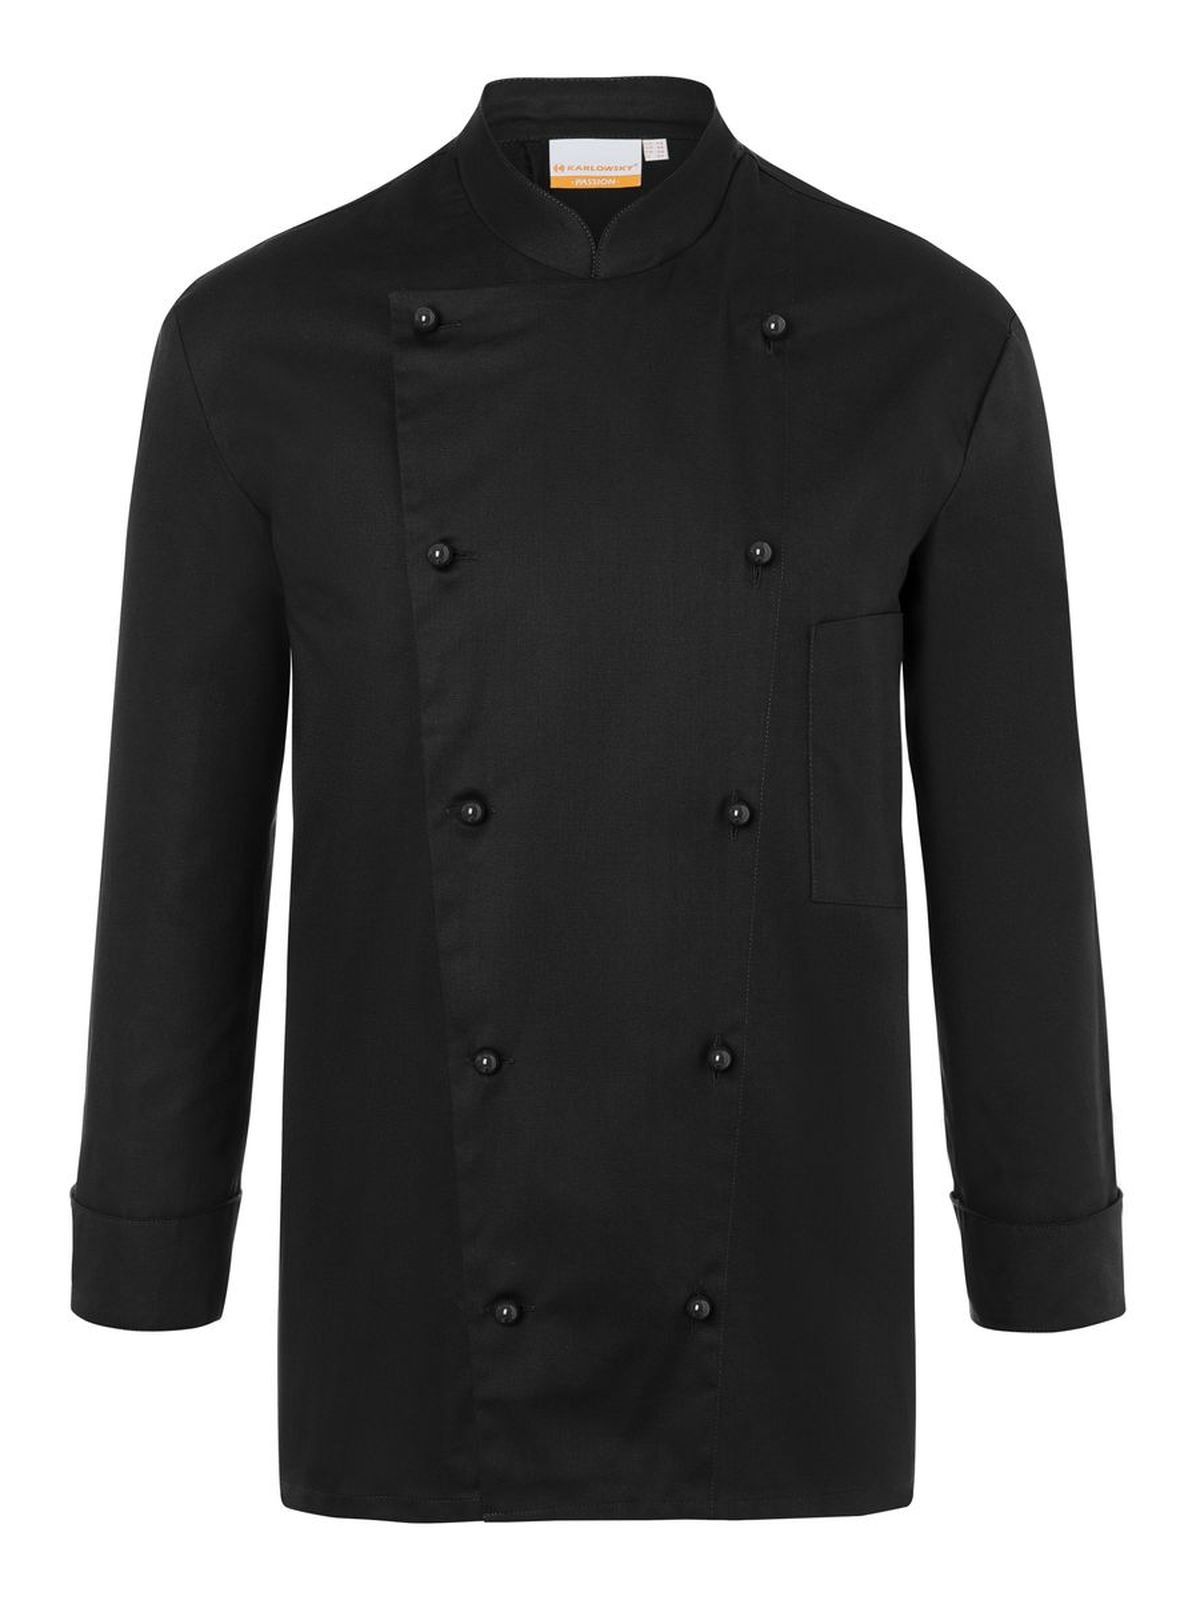 chef-jacket-thomas-black.webp